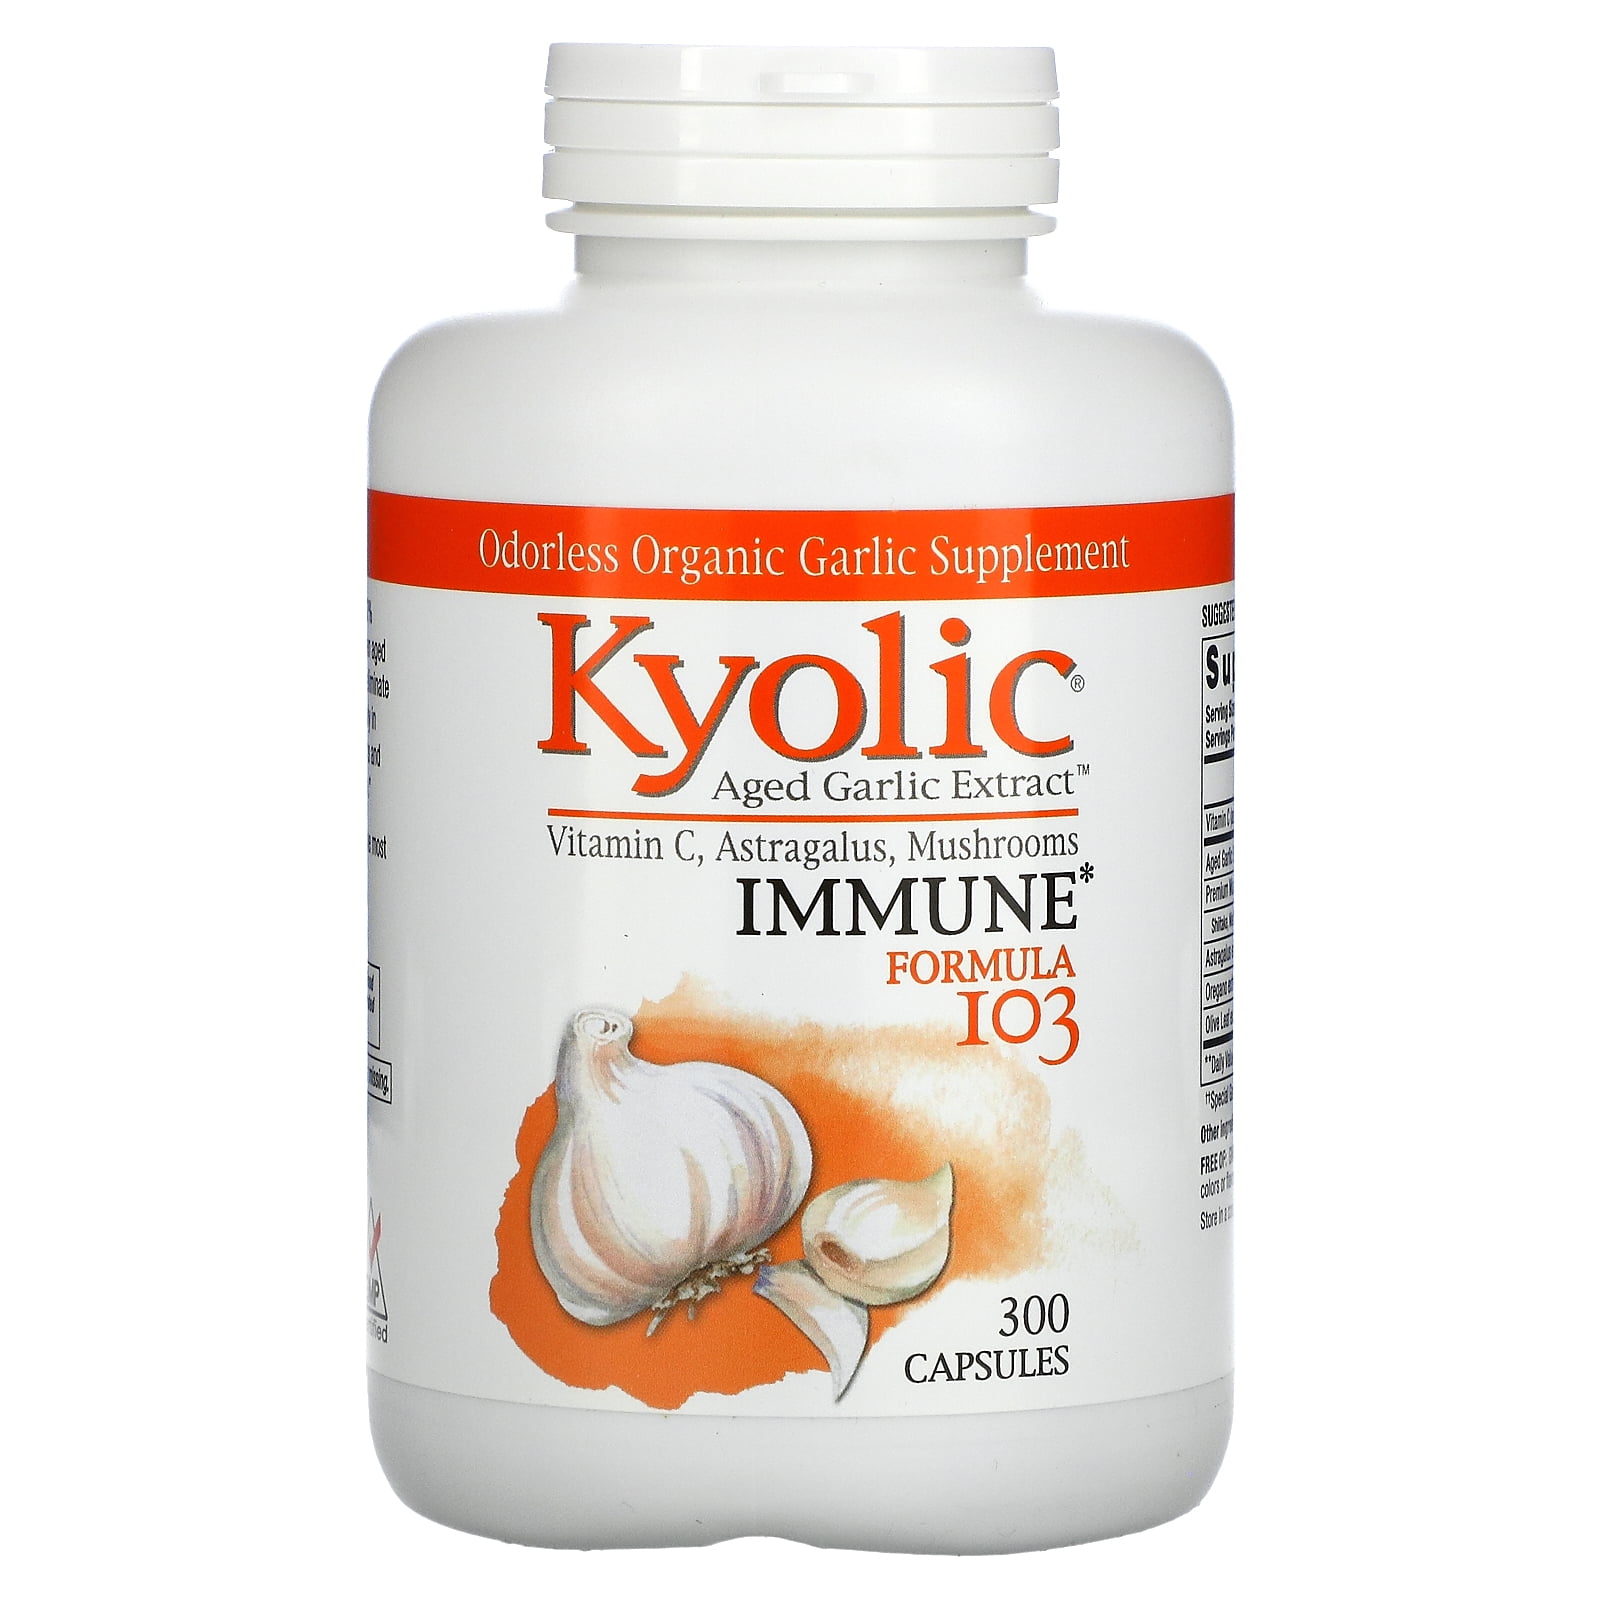 Aged Garlic Extract, Immune, Formula 103, 300 Capsules, Kyolic